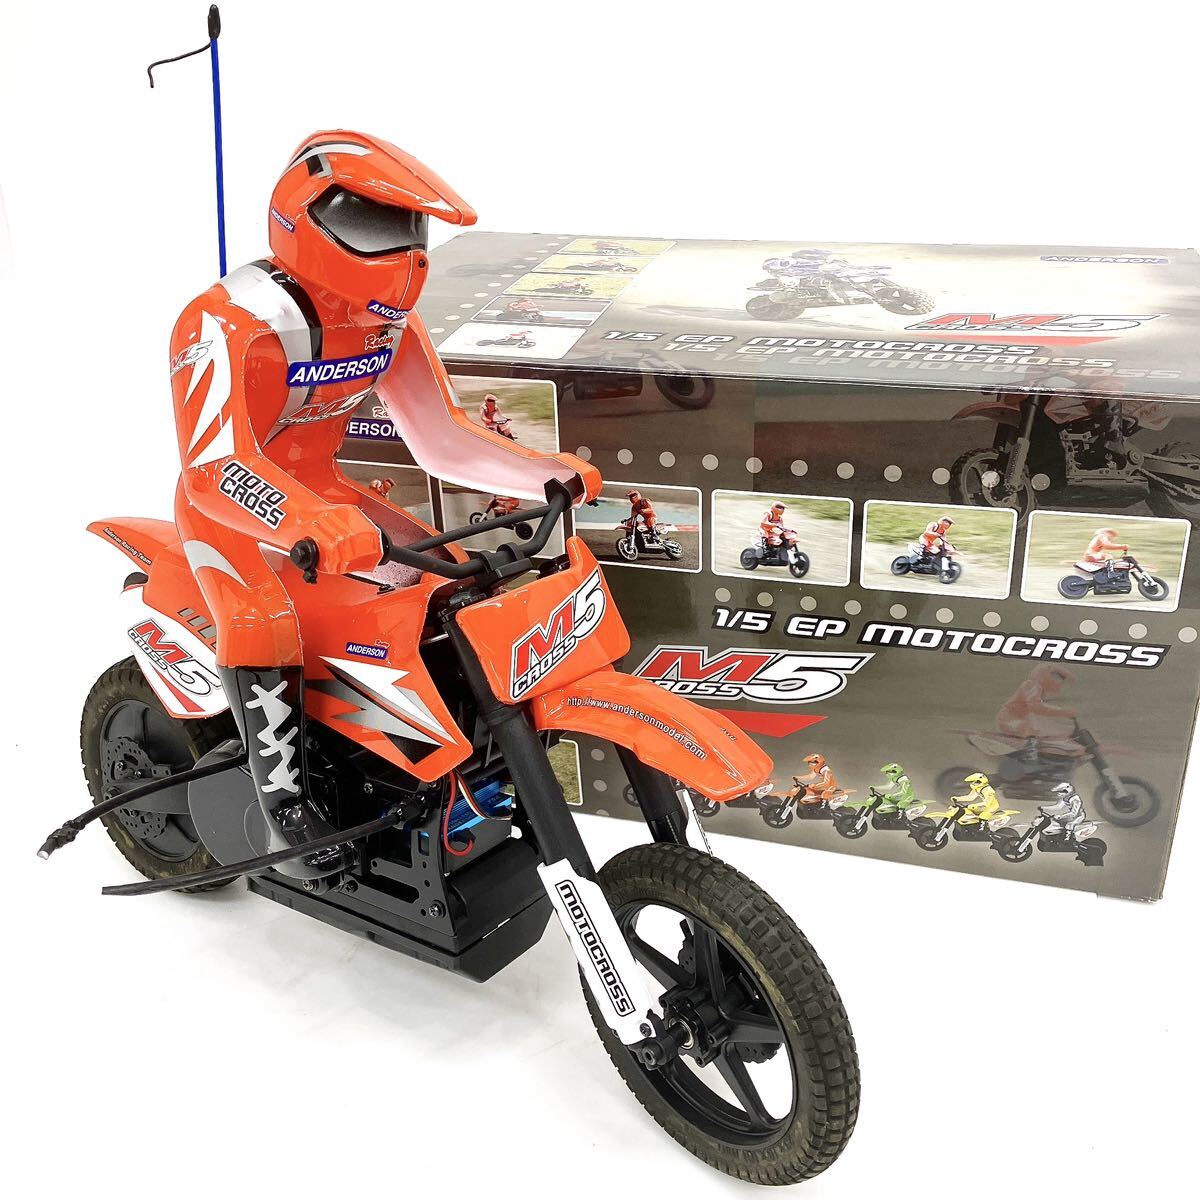 ANDERSON M5 CROSS 1/5 EP モトクロス バイク ラジコン おもちゃ 箱付き alp川0227の画像1